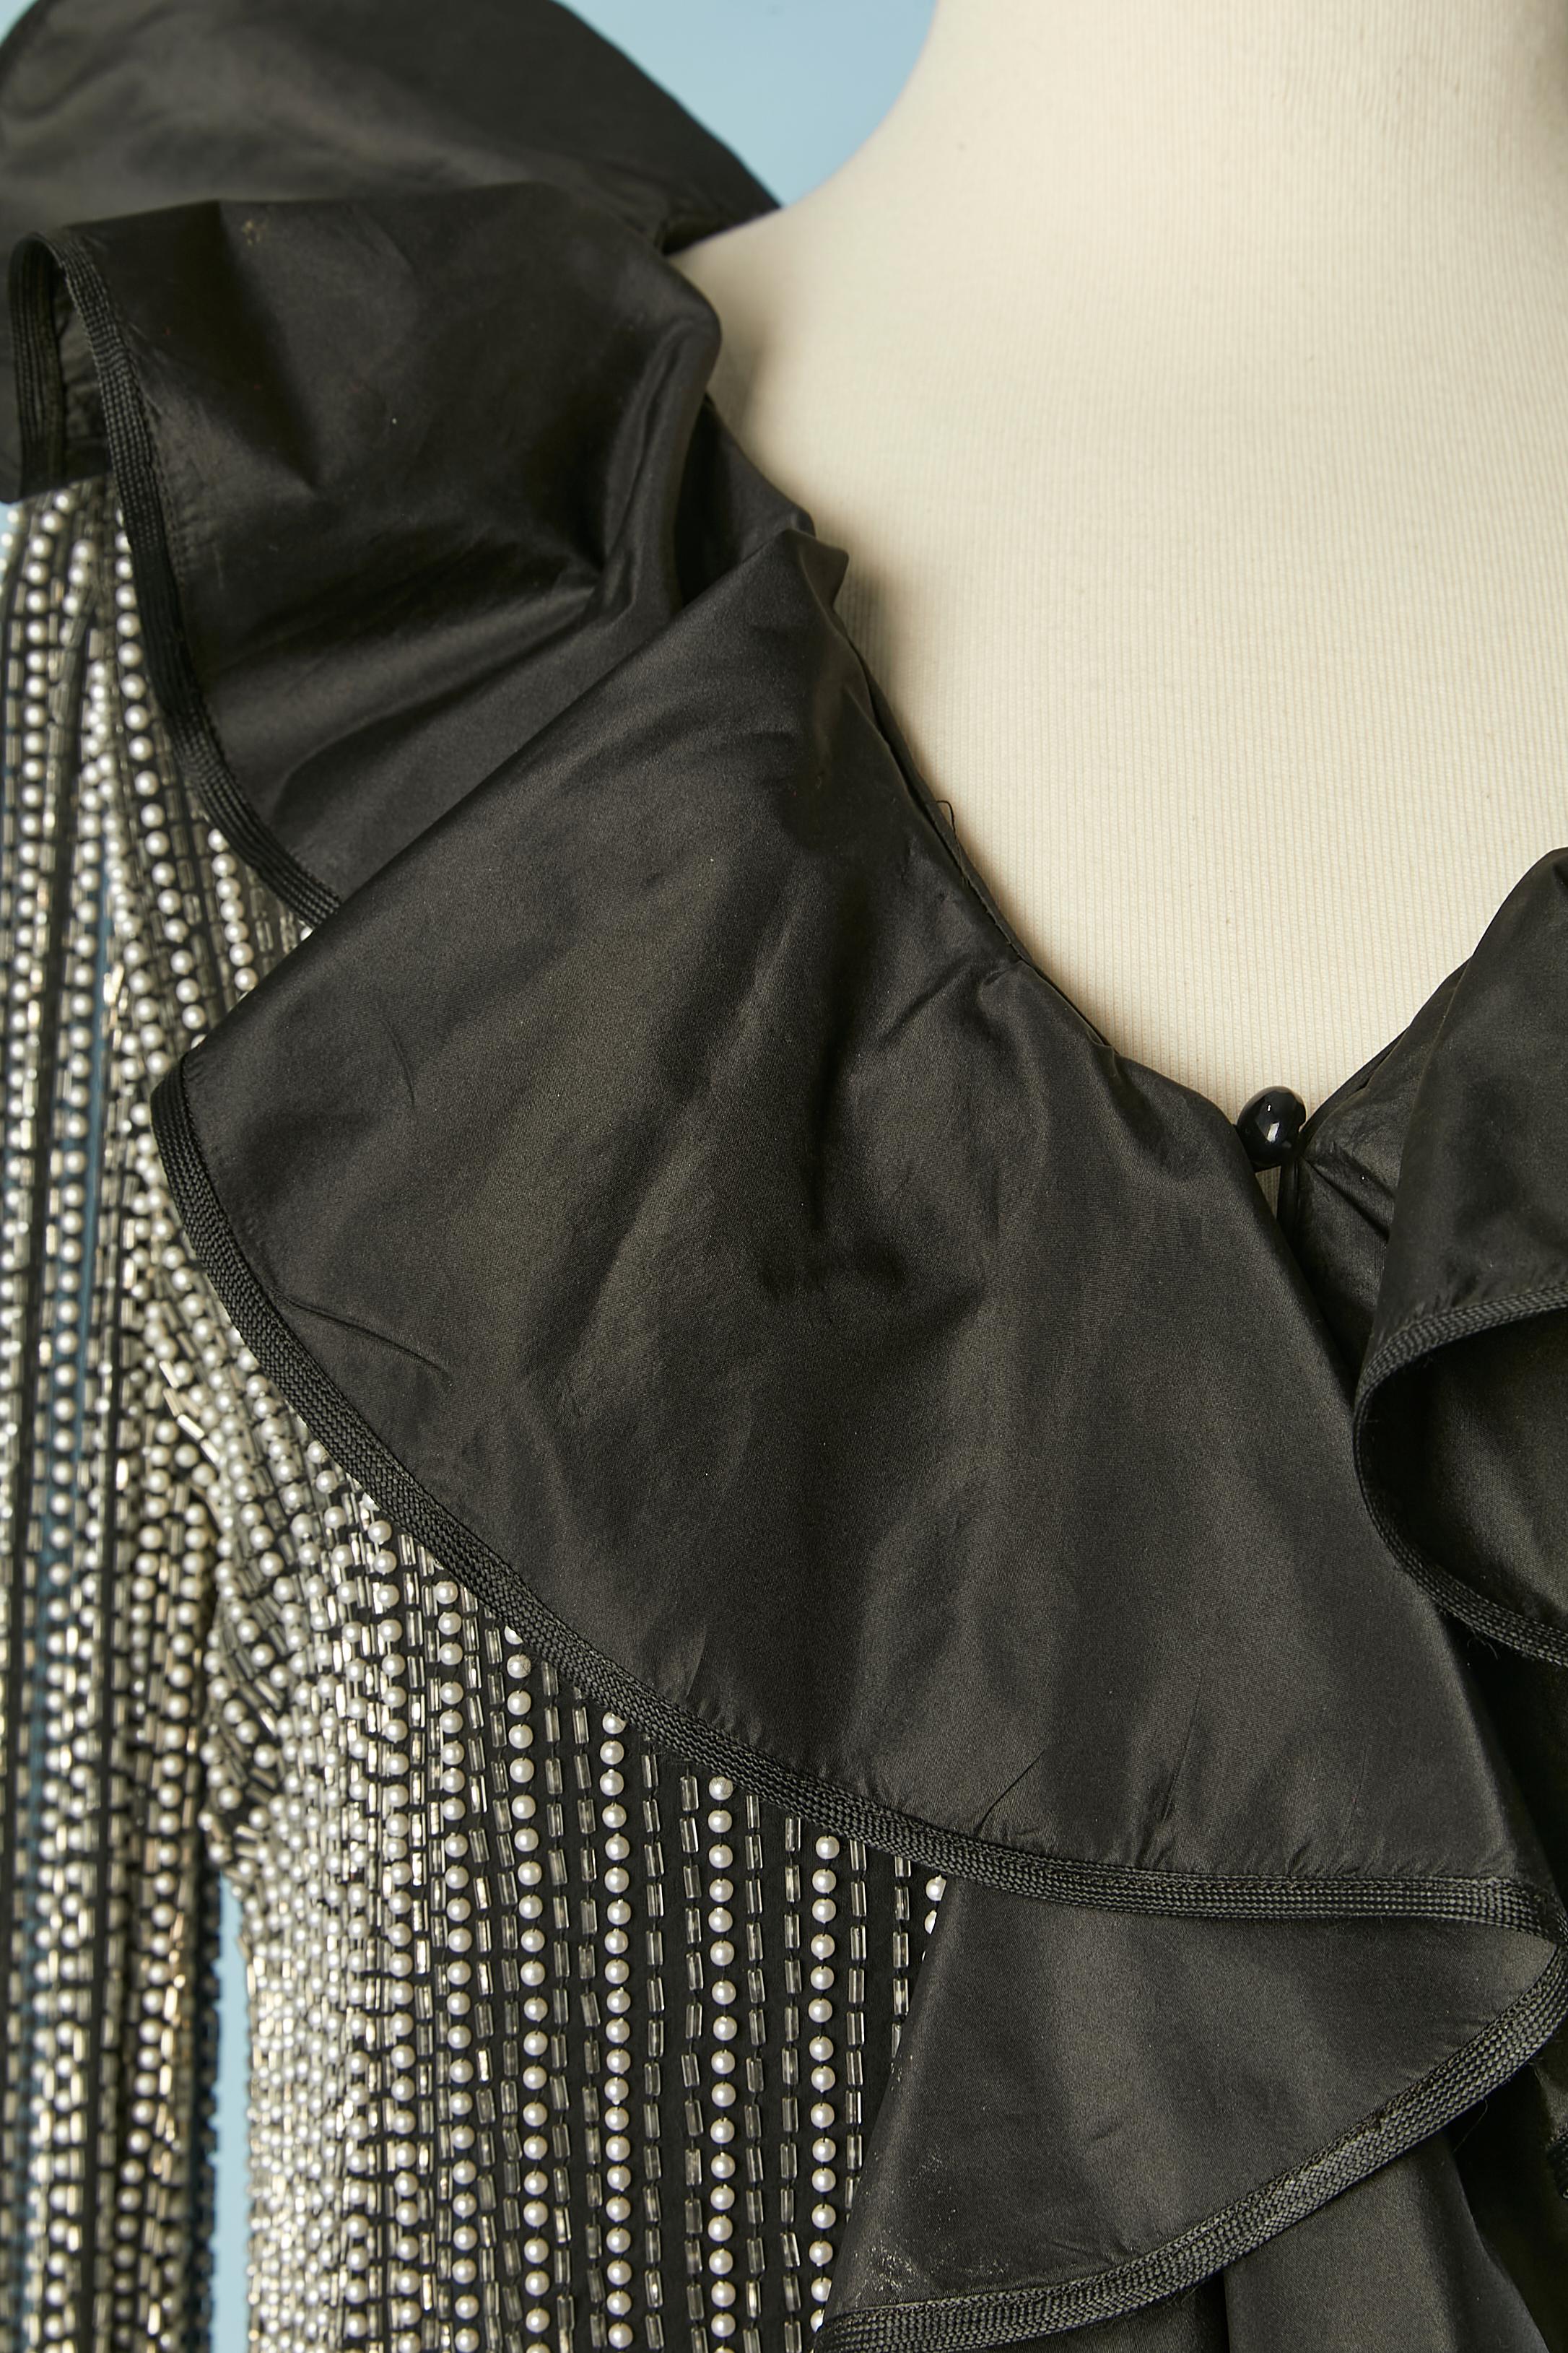 Chemise de soirée en mousseline de soie perlée et bordée de volants en taffetas noir. Bouton et boutonnière au milieu du devant.
TAILLE M